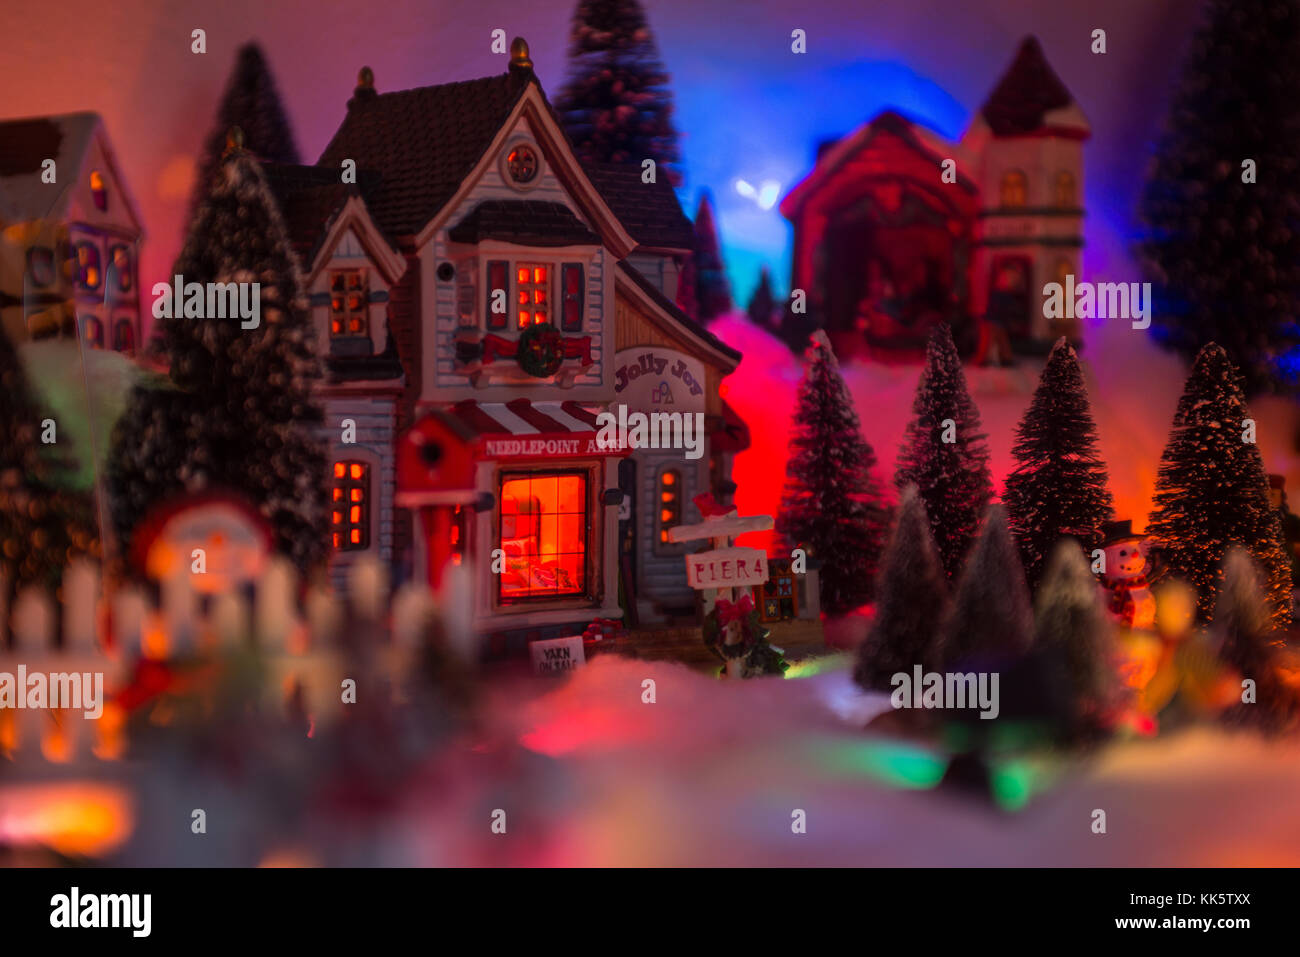 Noël arrière-plan de neige village miniature avec store front lit jolly joy arts et artisanat Banque D'Images